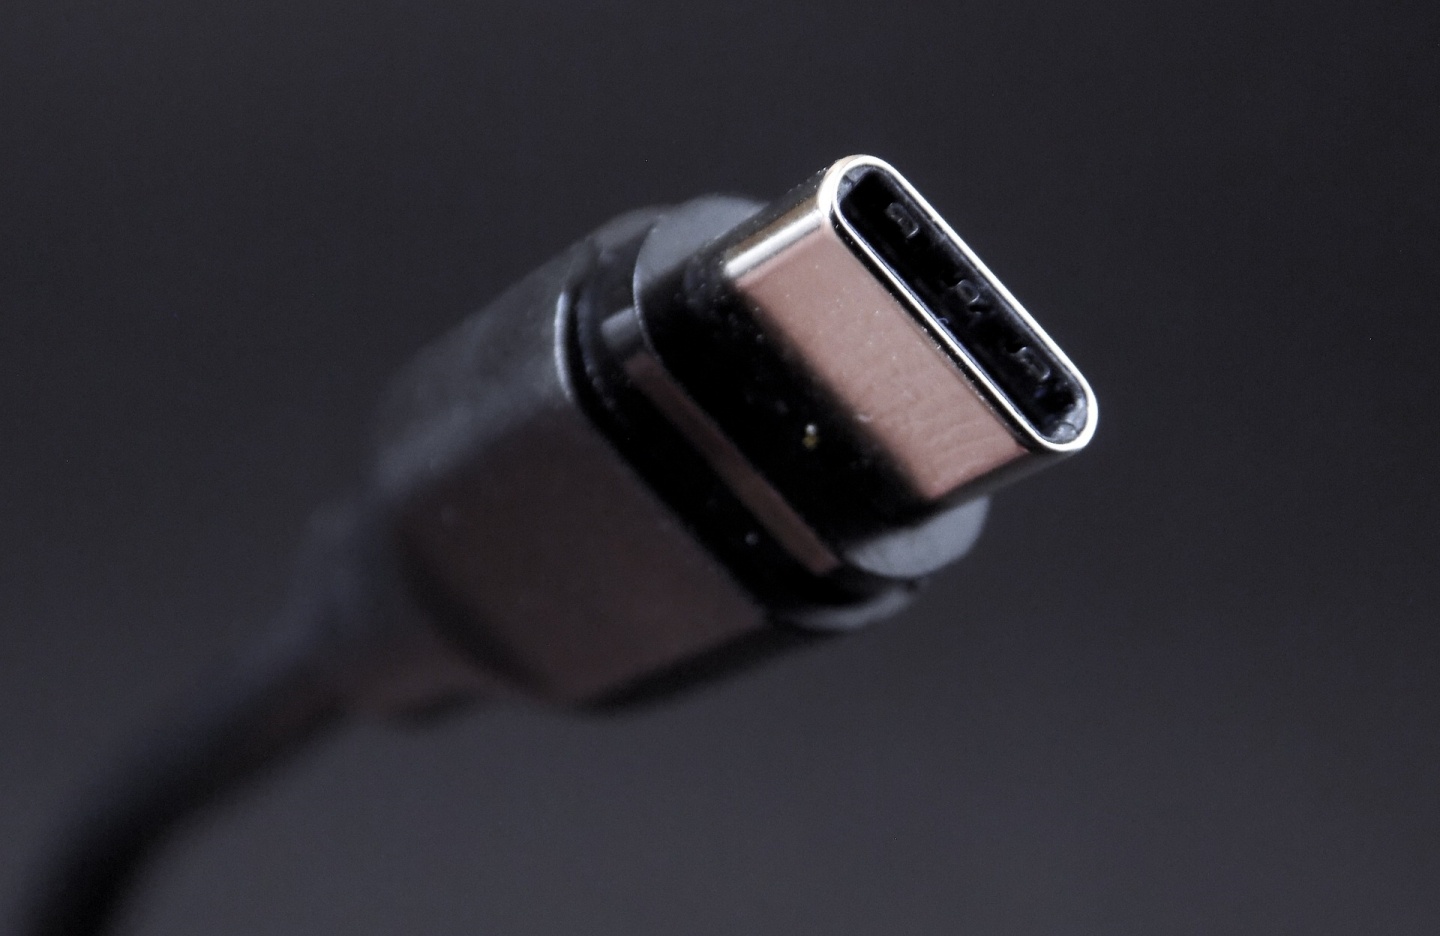 USB-C 新規格 支援最高 240W 功率 未來可用在電競筆電、高規格顯示器供電